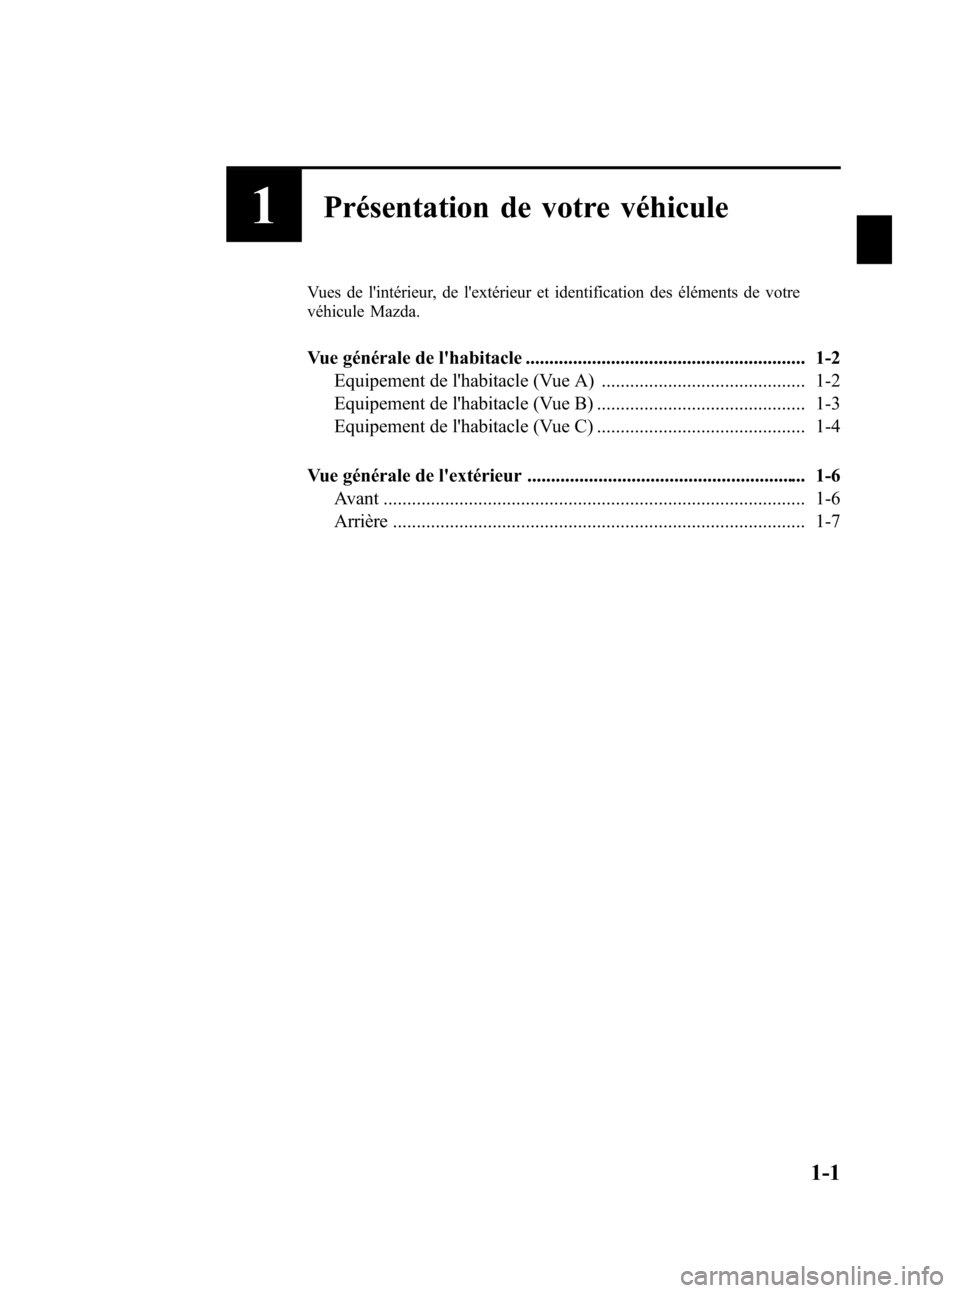 MAZDA MODEL CX-7 2007  Manuel du propriétaire (in French) Black plate (7,1)
1Présentation de votre véhicule
Vues de lintérieur, de lextérieur et identification des éléments de votre
véhicule Mazda.
Vue générale de lhabitacle .....................